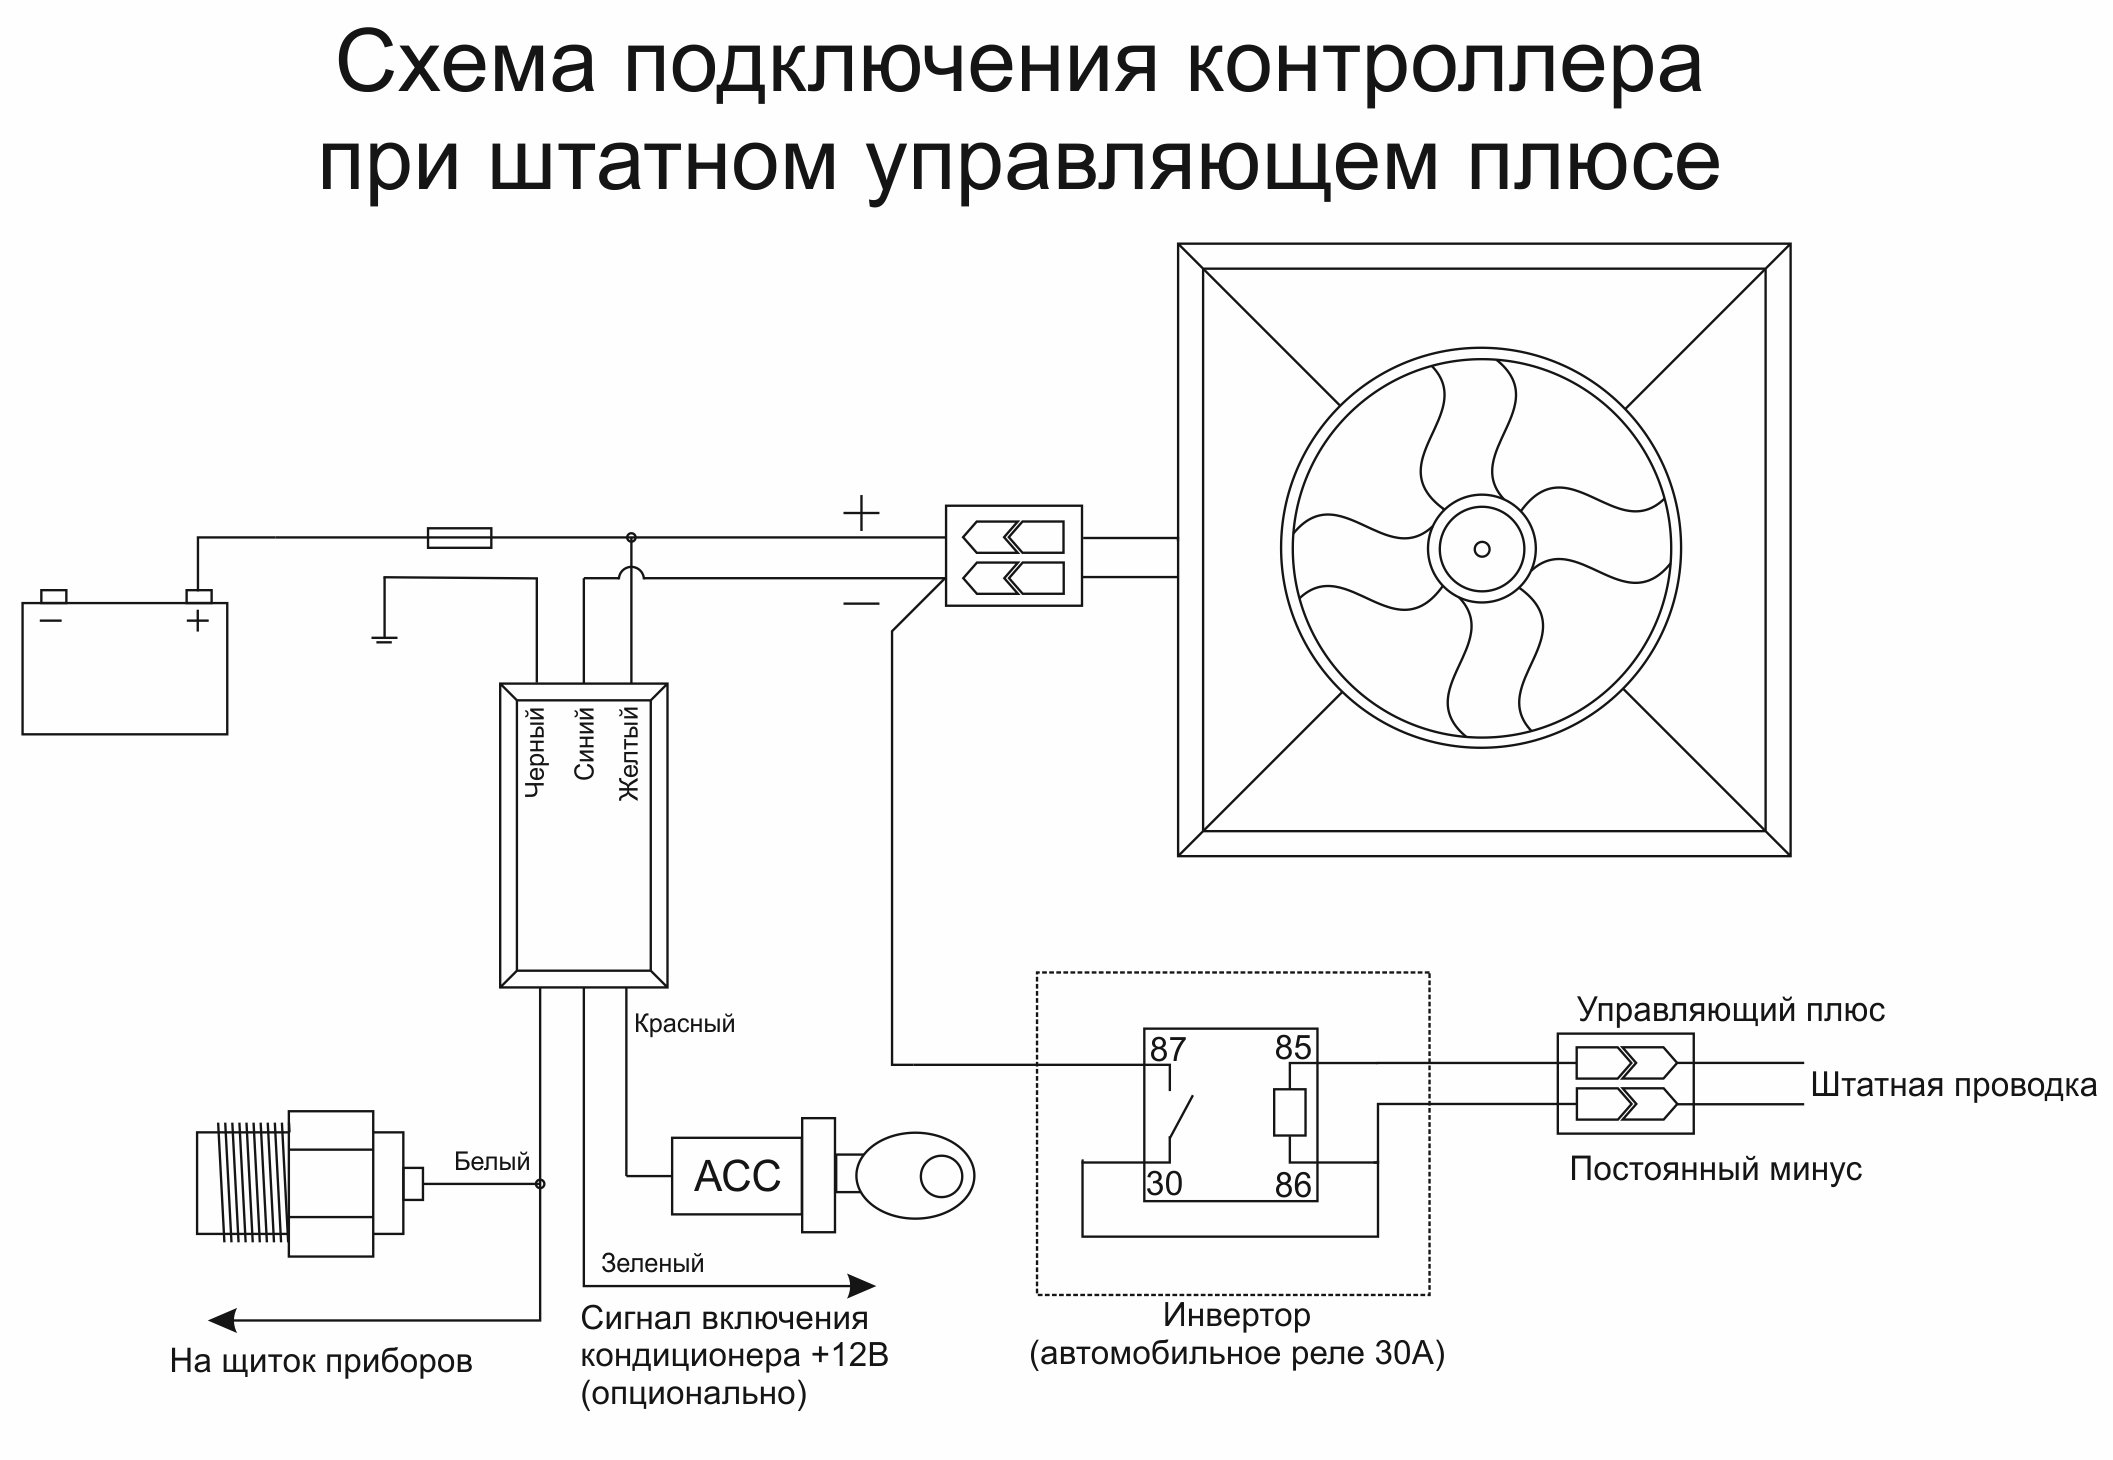 Схема подключения трехскоростного вентилятора